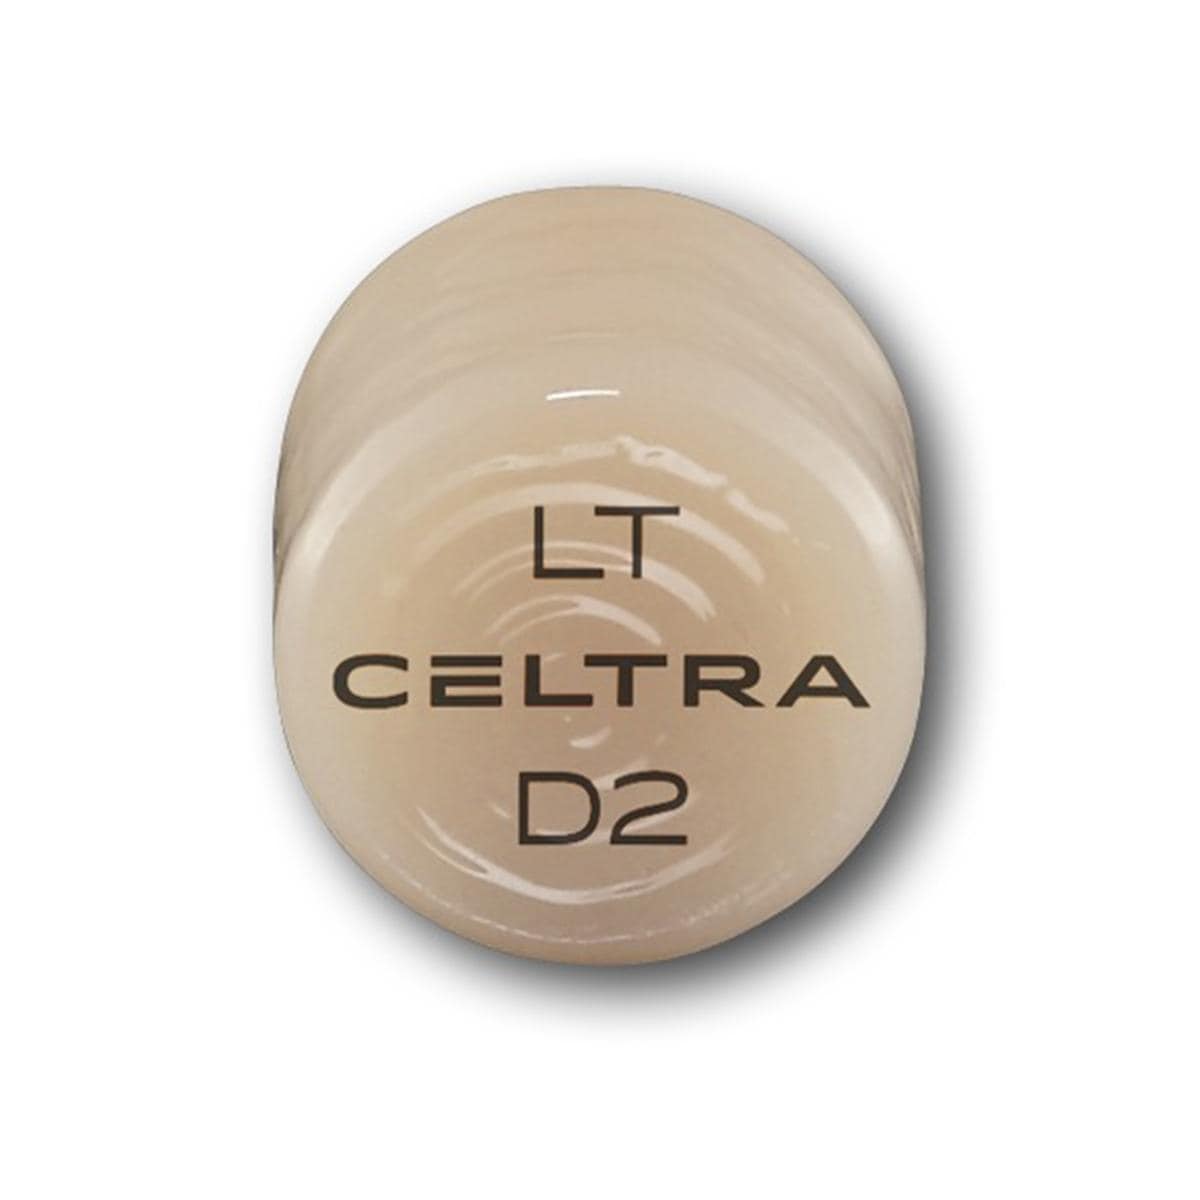 CELTRA® Press LT - D2, Packung 5 x 3 g